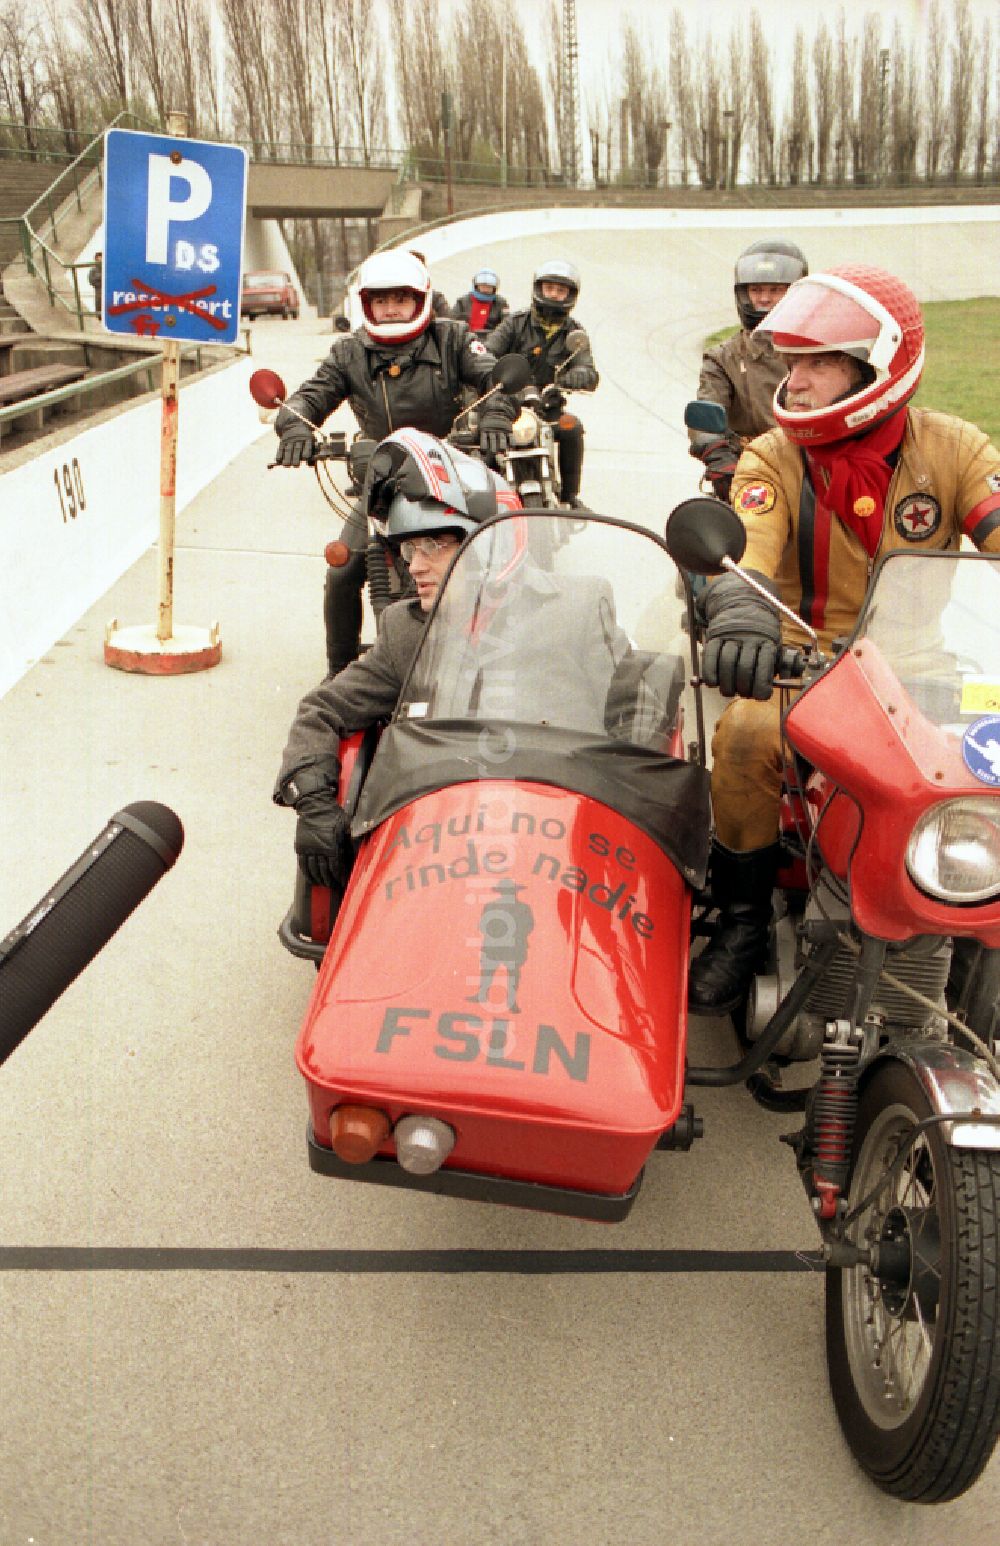 Berlin: Politiker Gregor Gysi mit einem Motorrad MZ in Berlin auf dem Gebiet der ehemaligen DDR, Deutsche Demokratische Republik